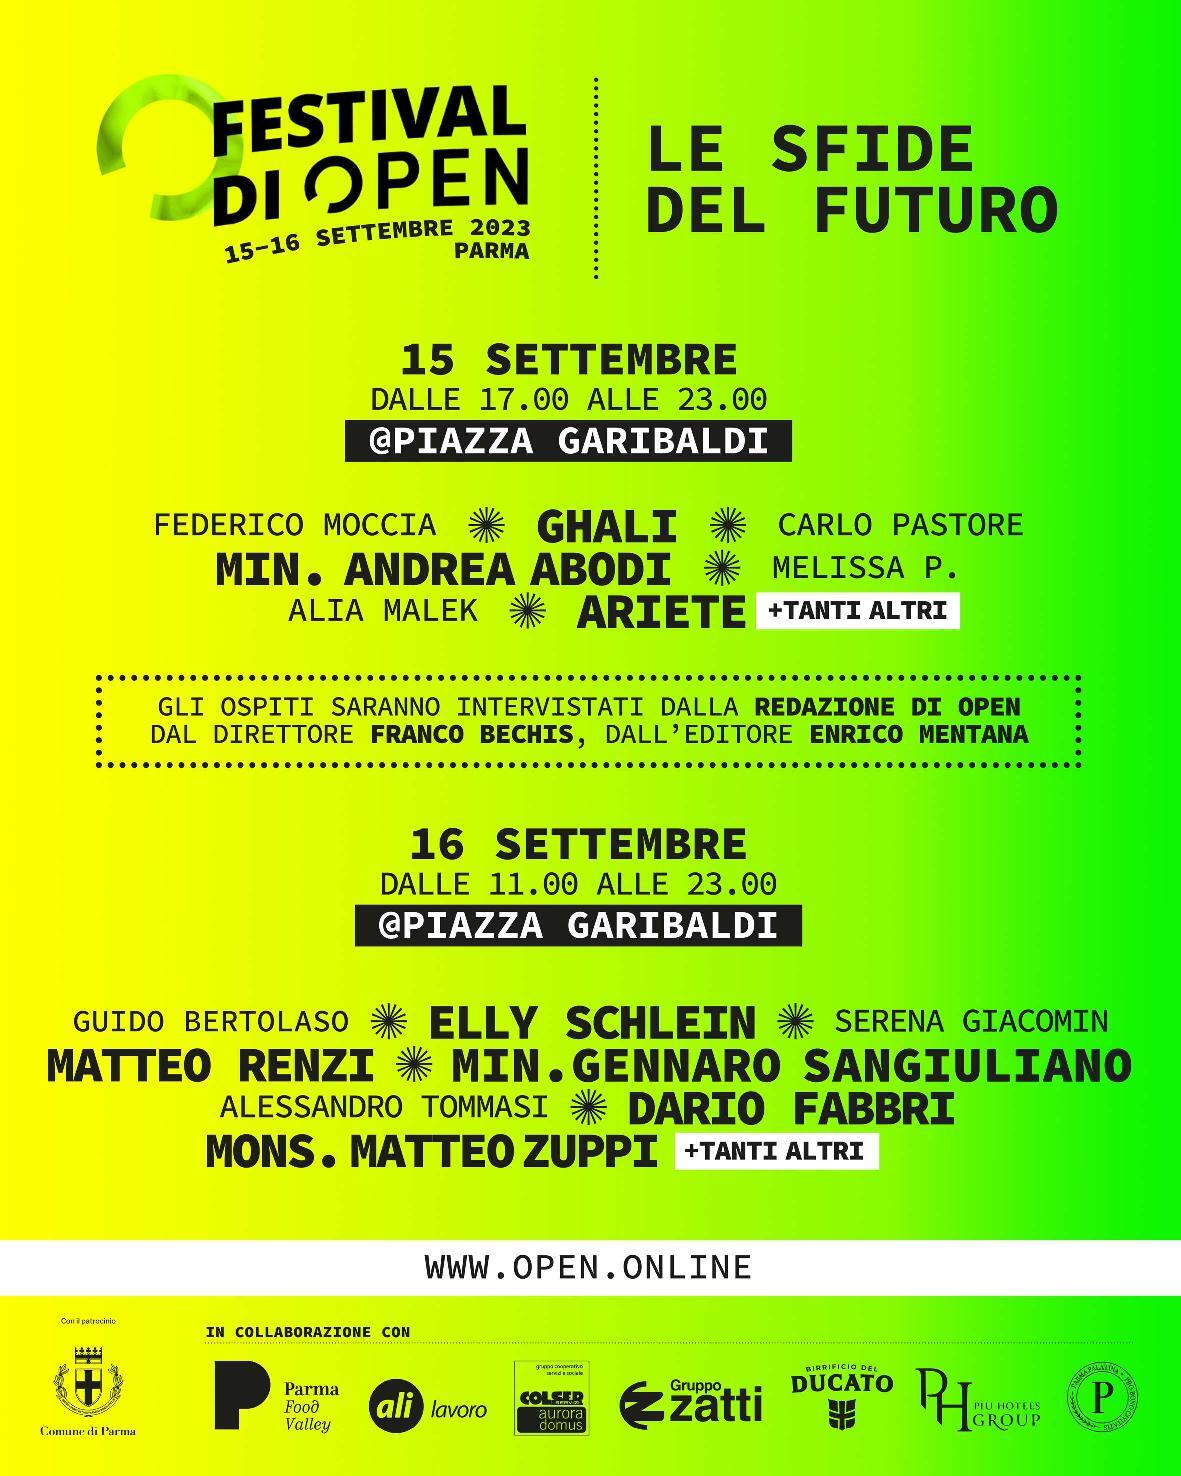 "Festival di Open - Le sfide del futuro", il 15 e il 16 settembre in piazza Garibaldi